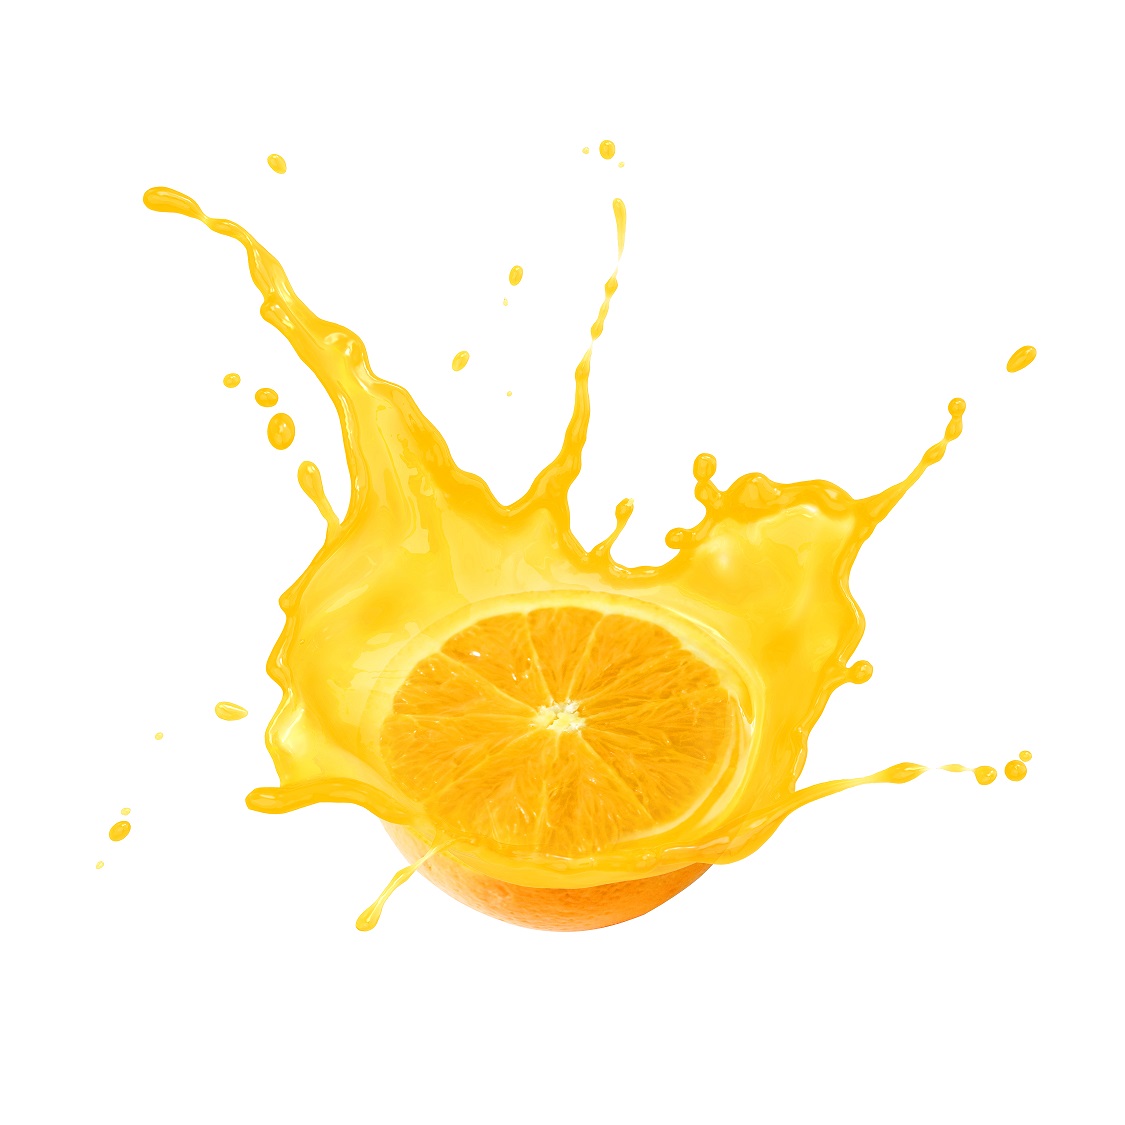 citrusi